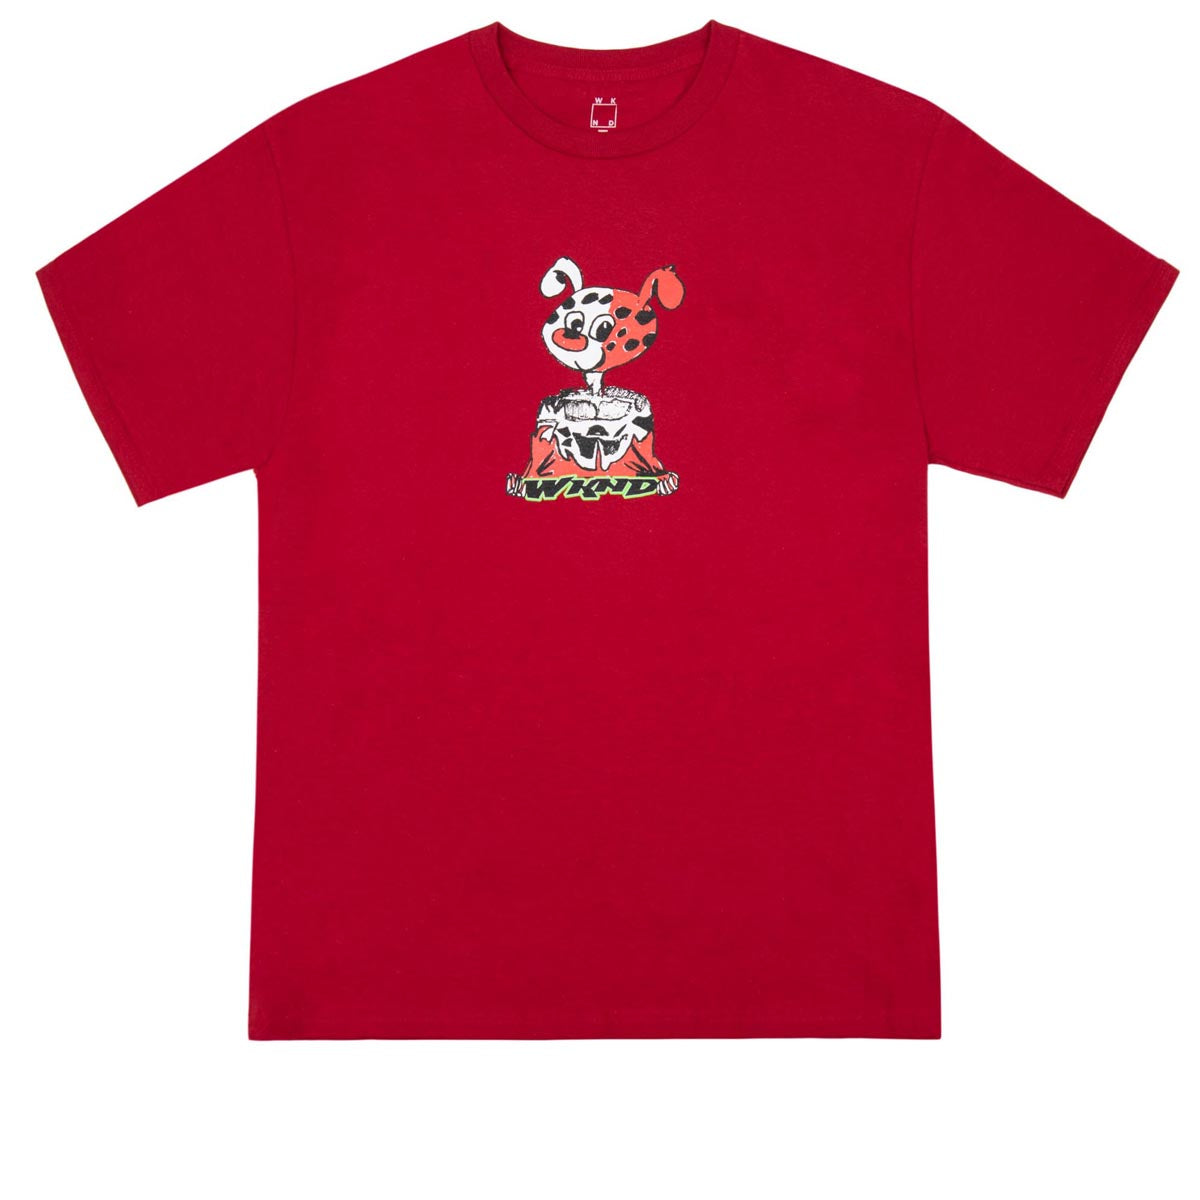 WKND Rip Torn T-Shirt - Cardinal image 1